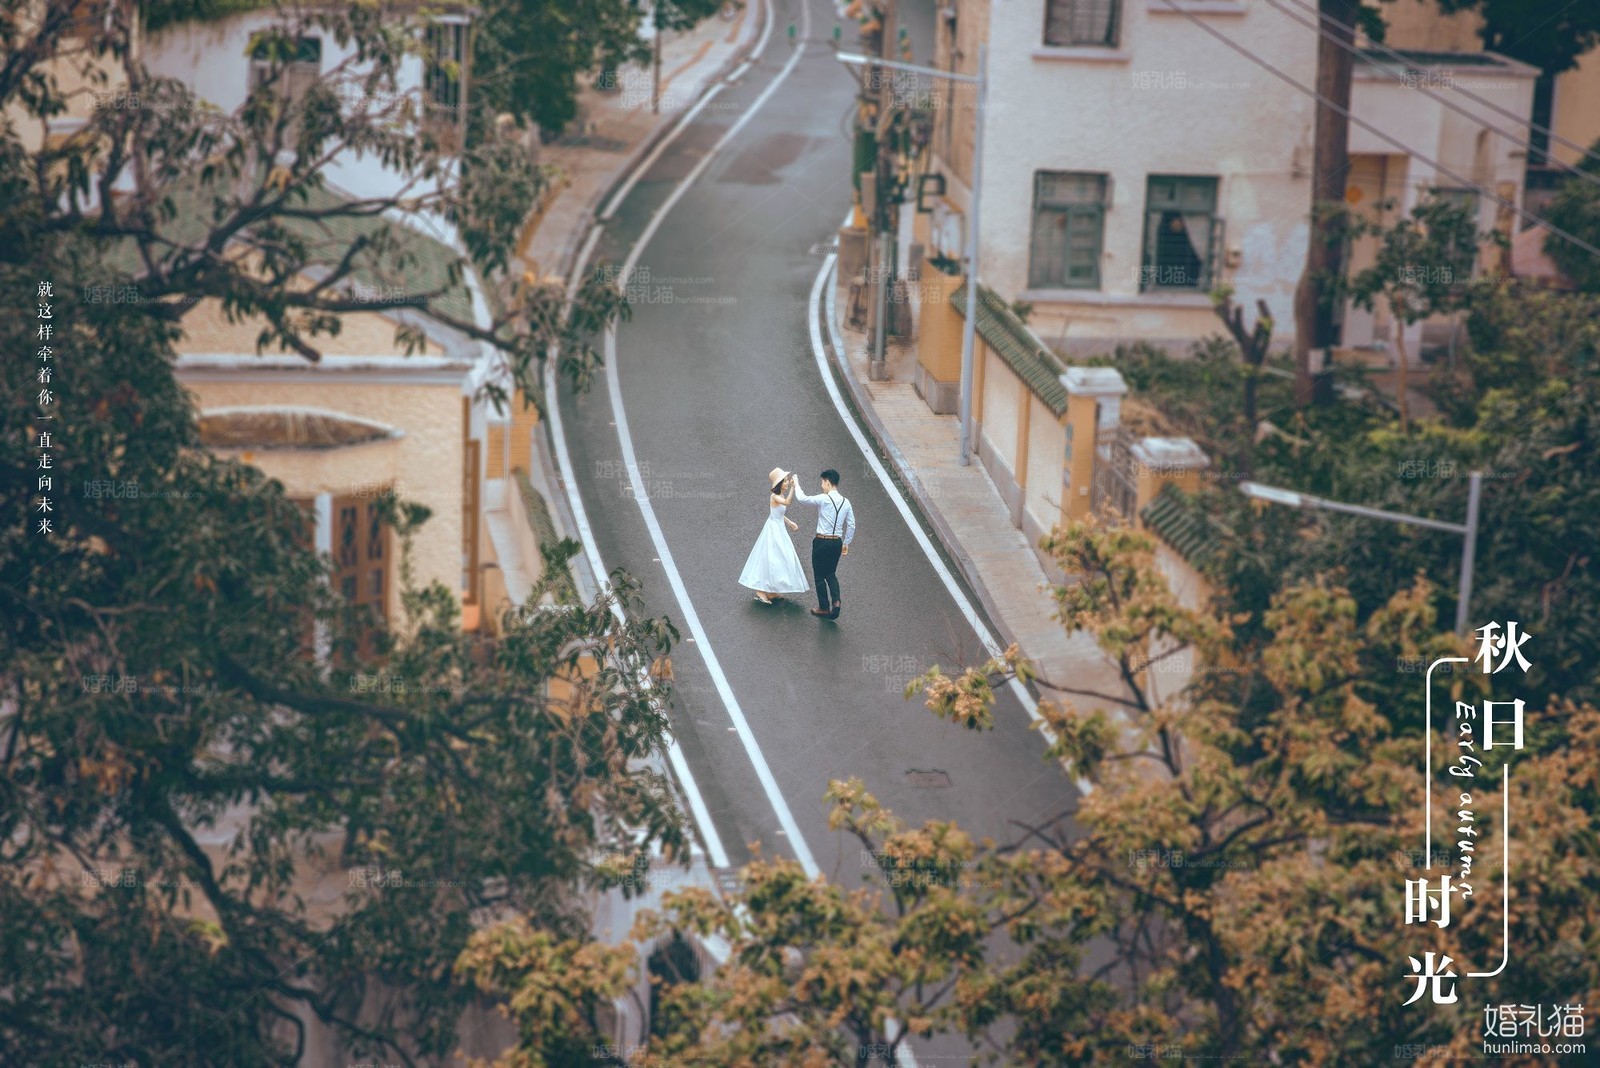 2018年11月广州结婚照,,湛江婚纱照,婚纱照图片